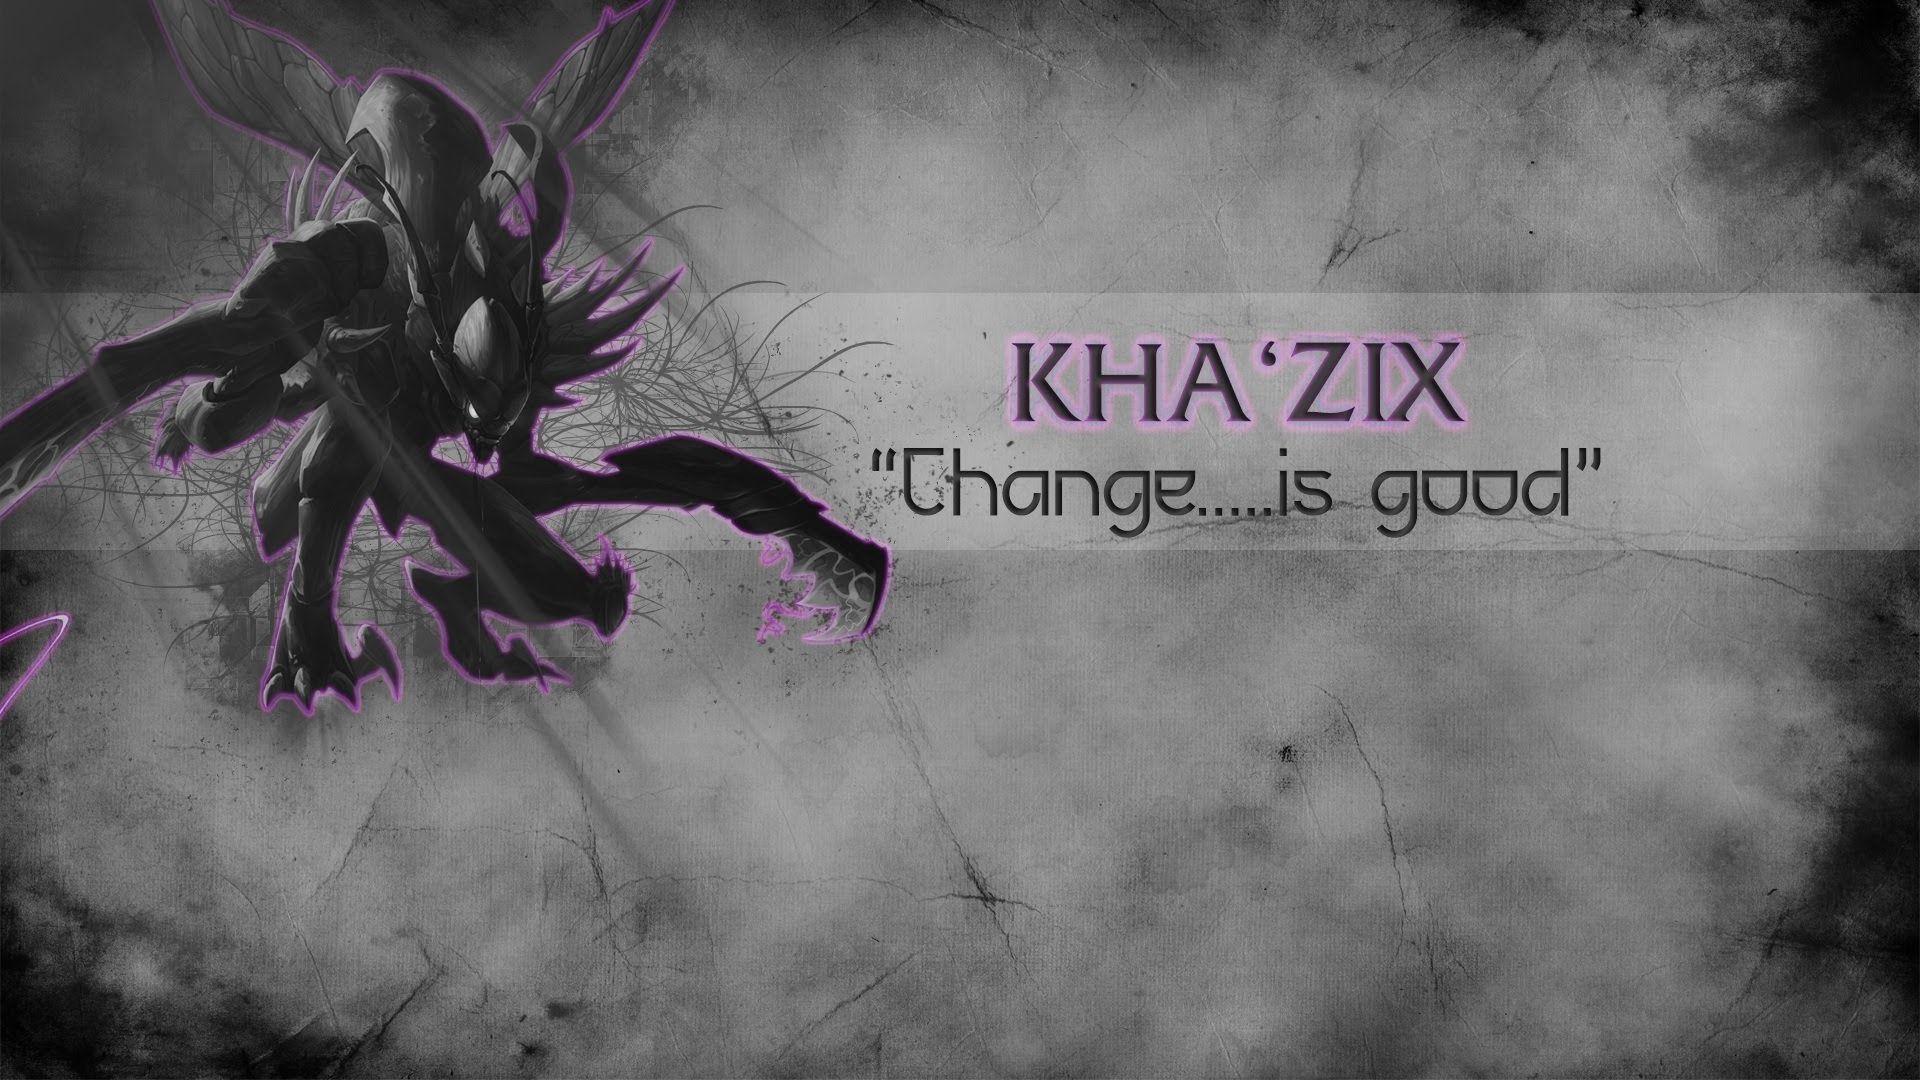 LoL Kha'zix Change. is good